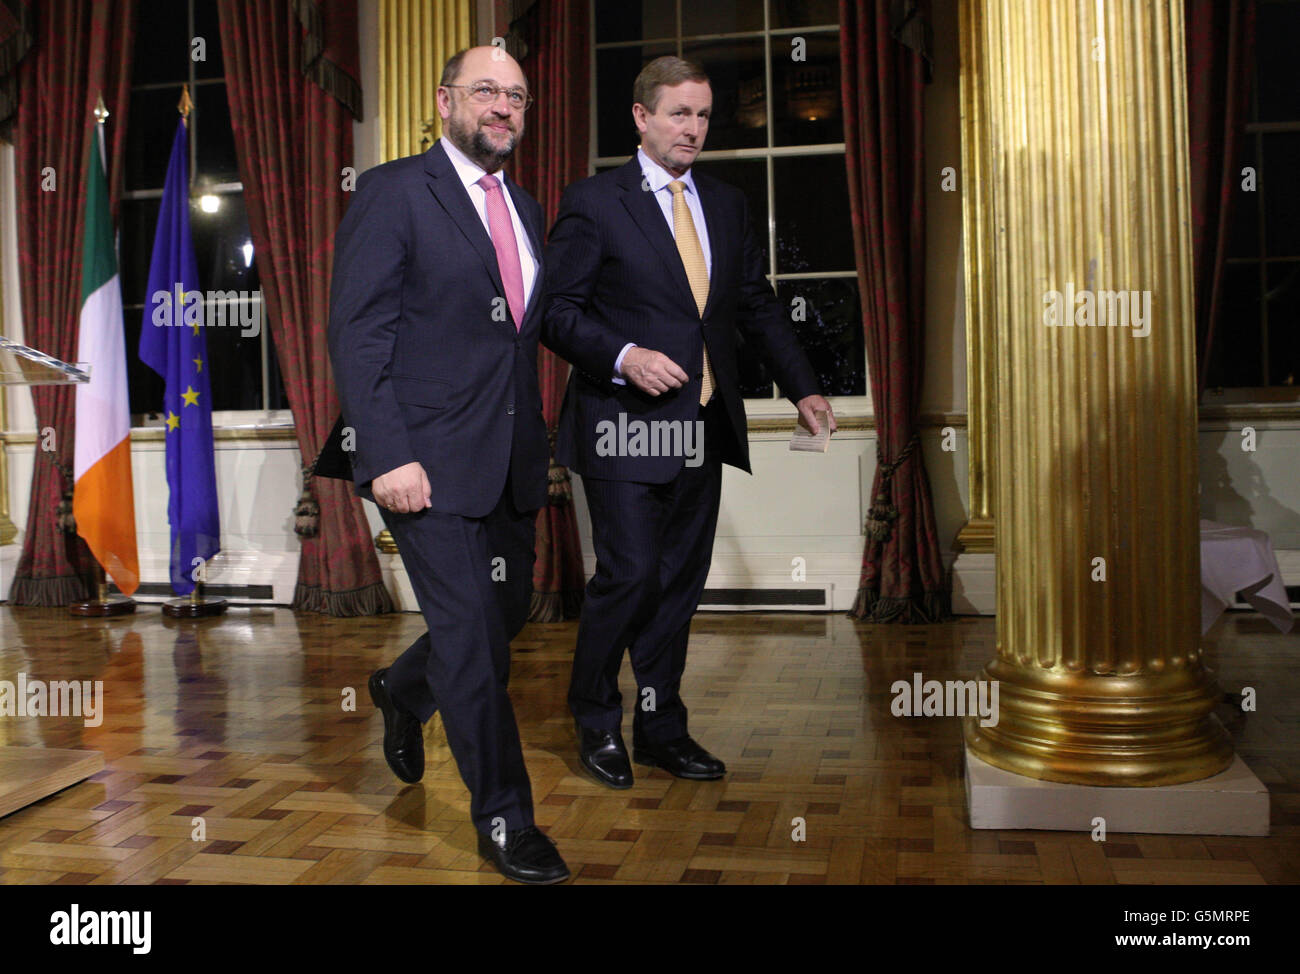 Der Präsident des Europäischen Parlaments Martin Schulz, Taoiseach Enda Kenny, verlässt das Amt, nachdem er heute im Anschluss an Gespräche mit den Vorsitzenden der Fraktionen des Parlaments in Dublin Castle, Dublin, Irland, eine Pressekonferenz abgehalten hat. Stockfoto